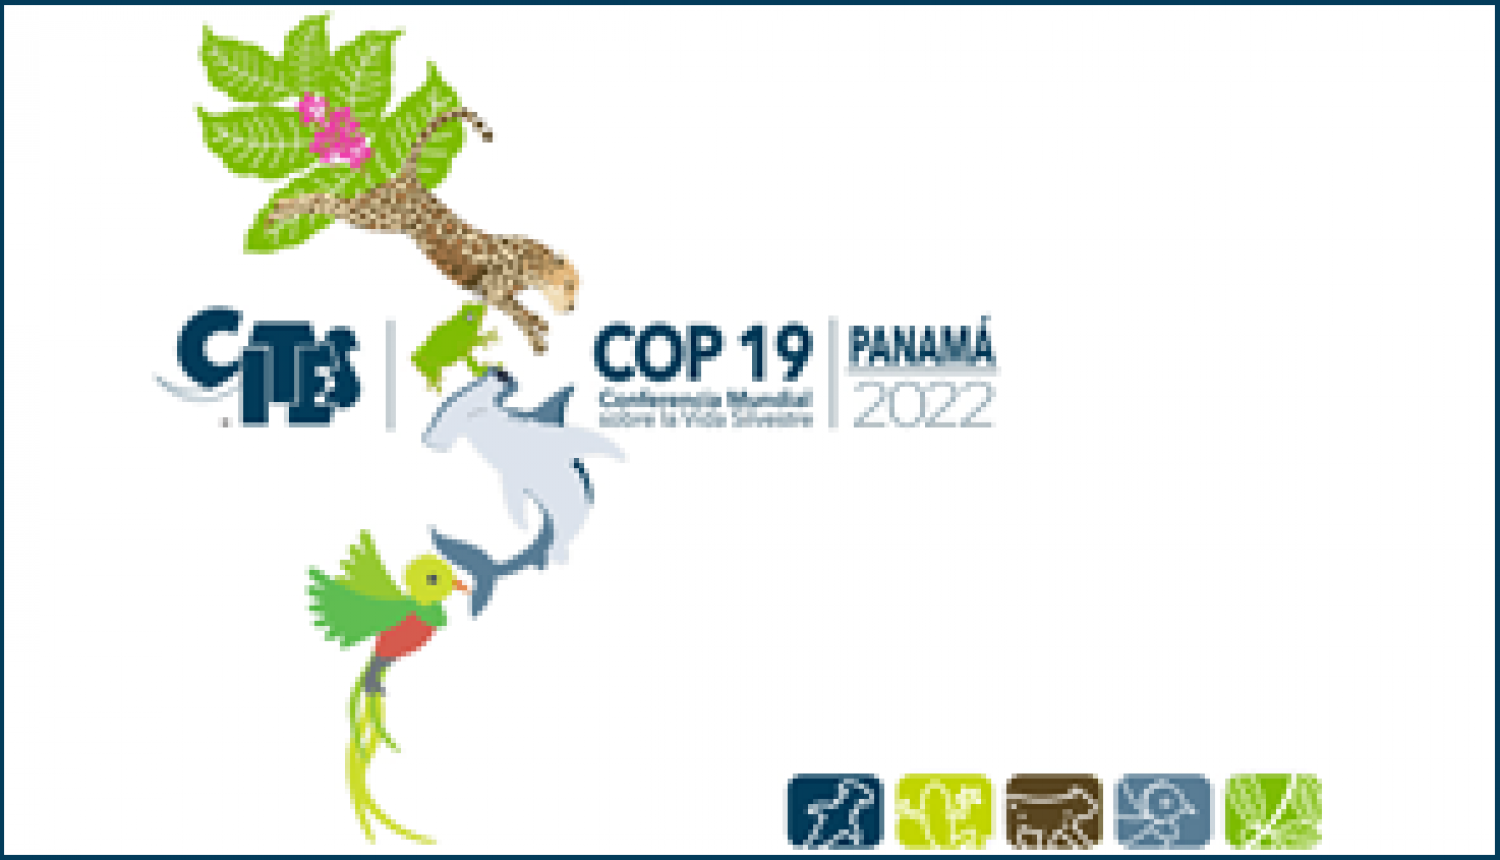 CITES dalībvalstu 19. konferences logo